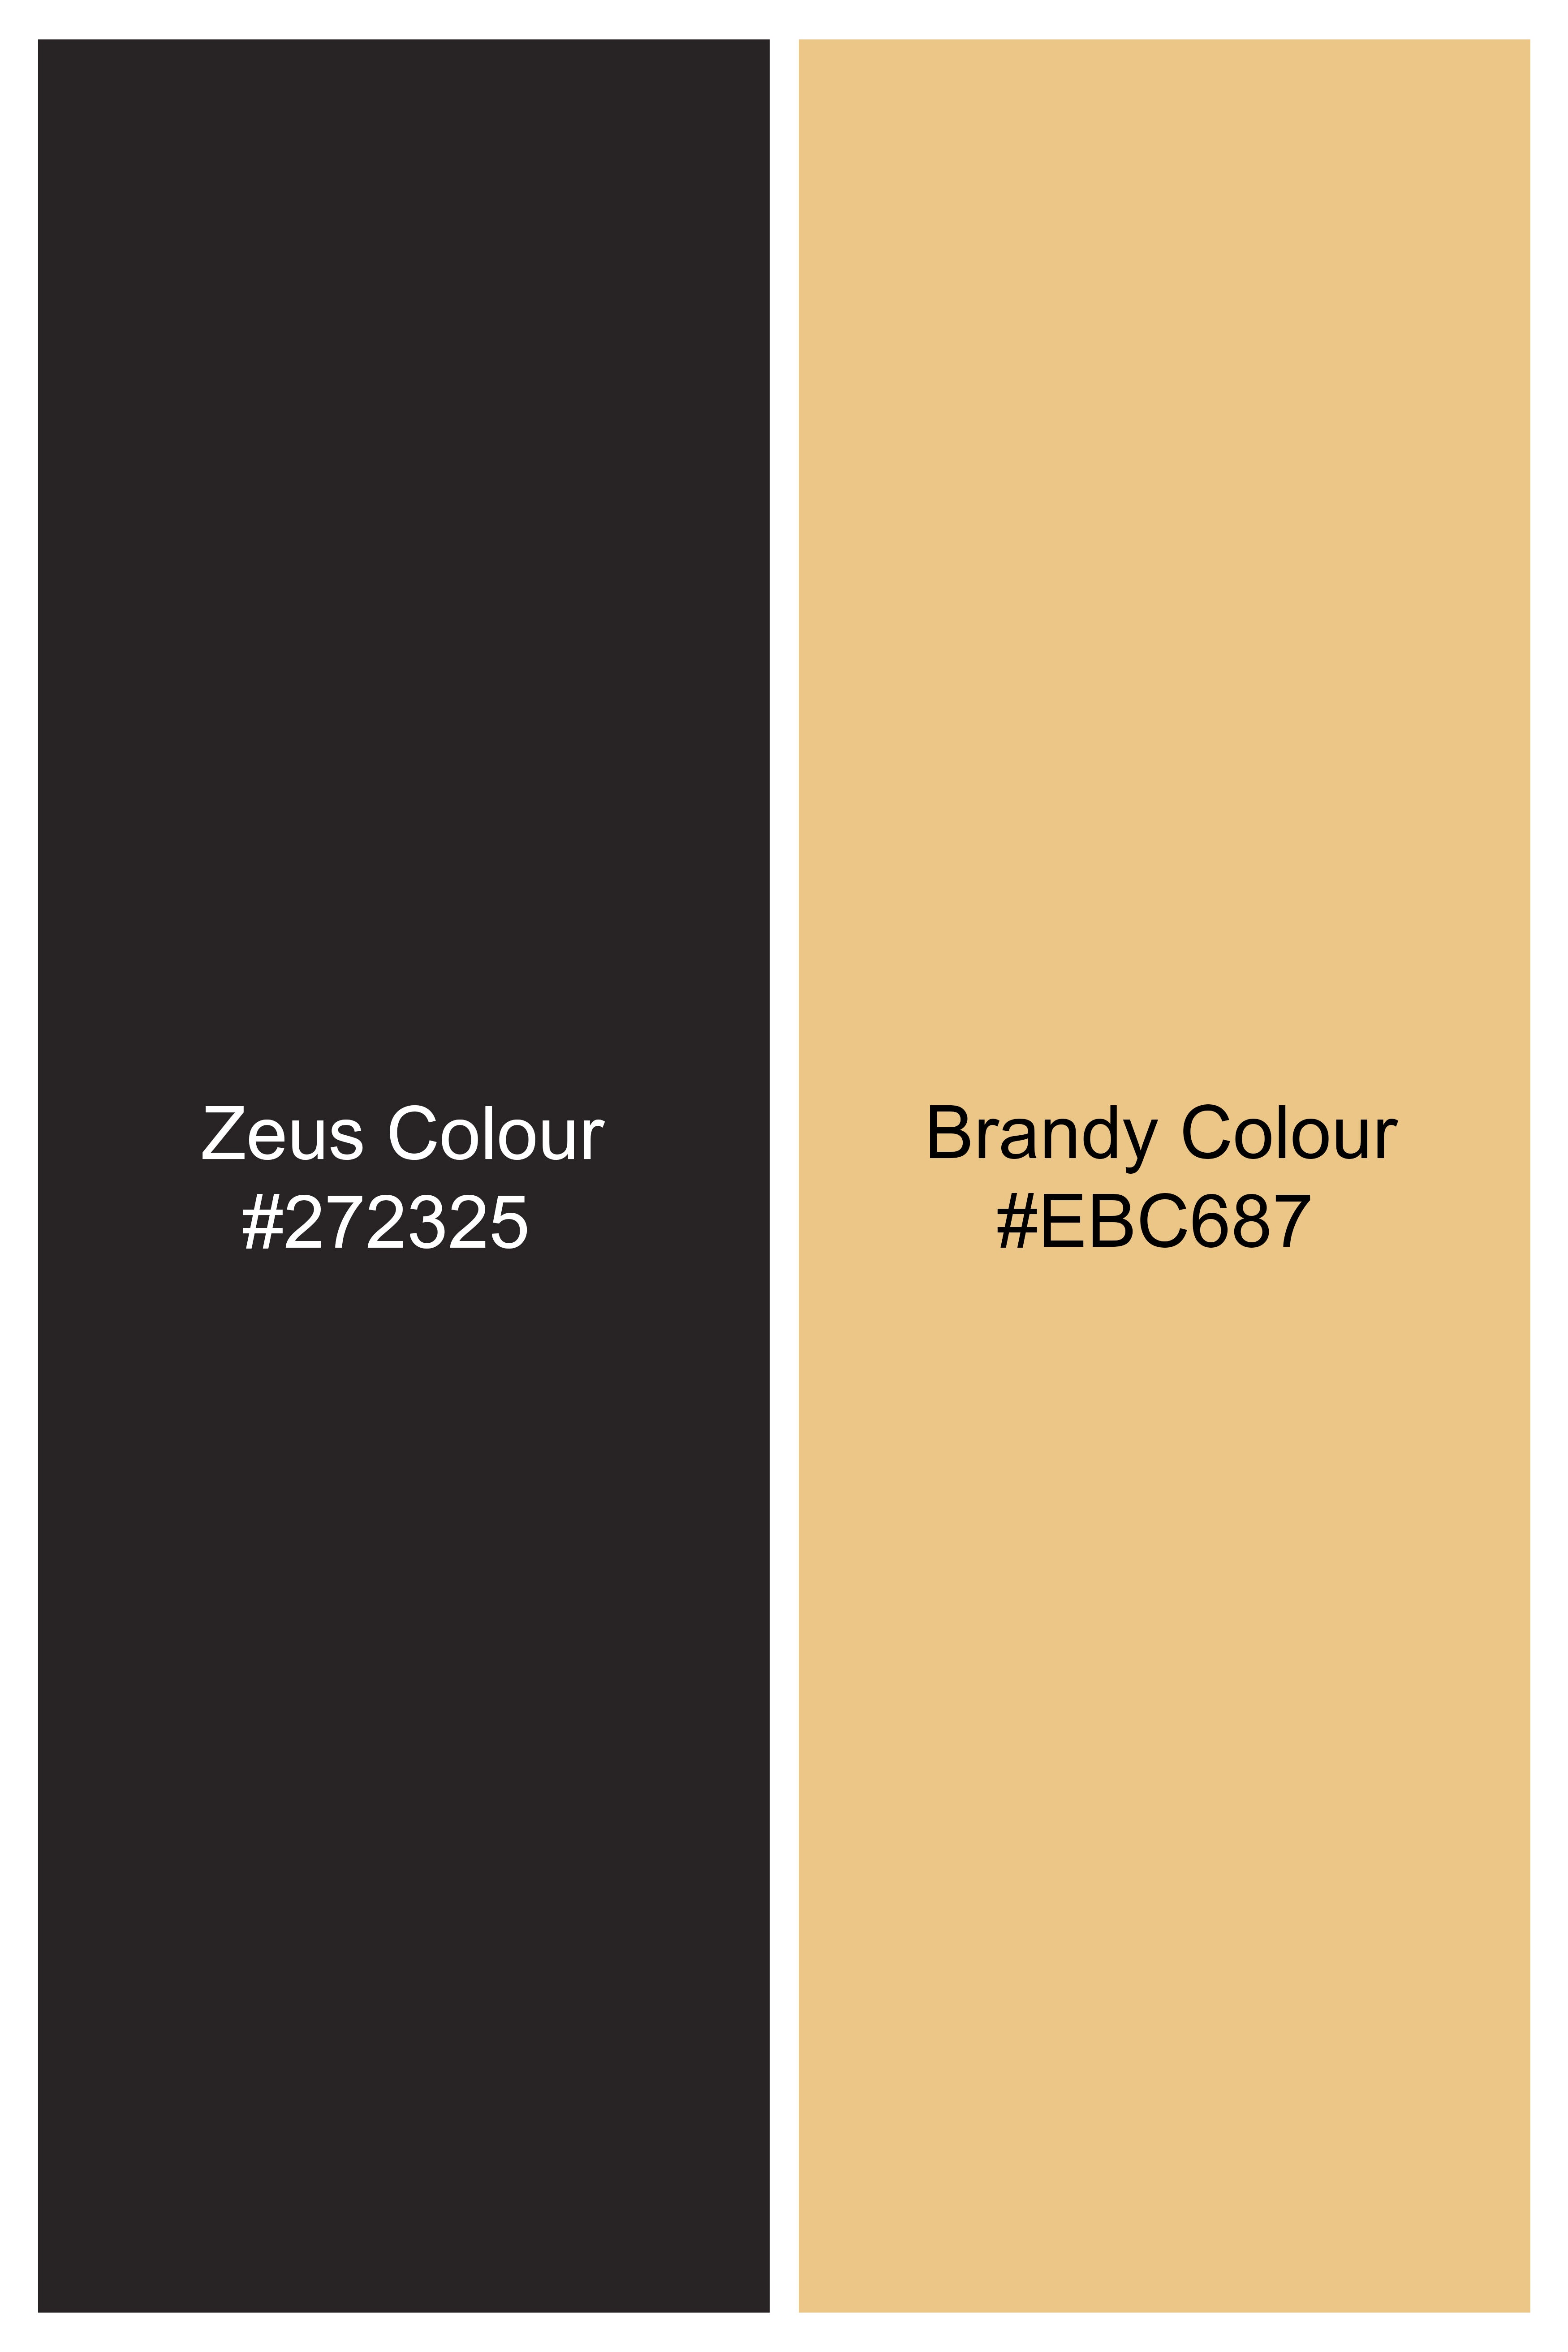 Zeus Black and Brandy Brown Wool Rich Designer Waistcoat V2730-36, V2730-38, V2730-40, V2730-42, V2730-44, V2730-46, V2730-48, V2730-50, V2730-52, V2730-54, V2730-56, V2730-58, V2730-60